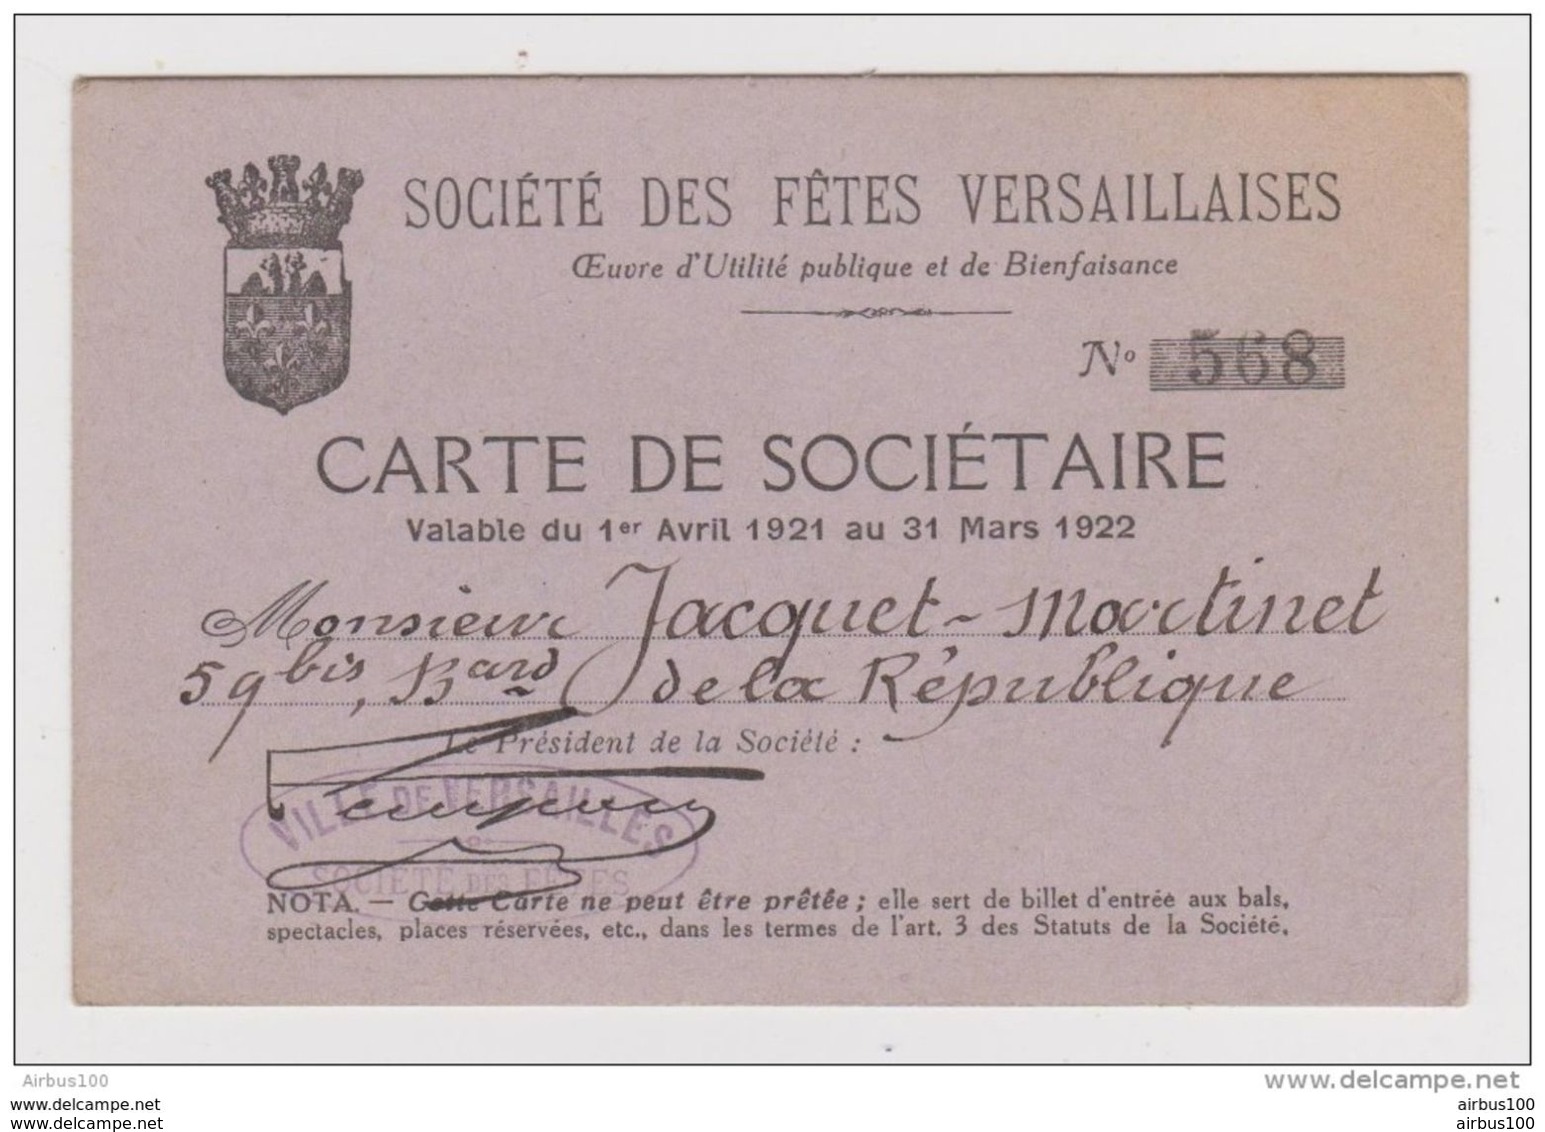 SOCIÉTÉ Des FÊTES VERSAILLAISES - VERSAILLES CARTE De SOCIÉTAIRE Mr JACQUET MARTINET ANNÉE 1921 1922 N° 568 - Non Classés